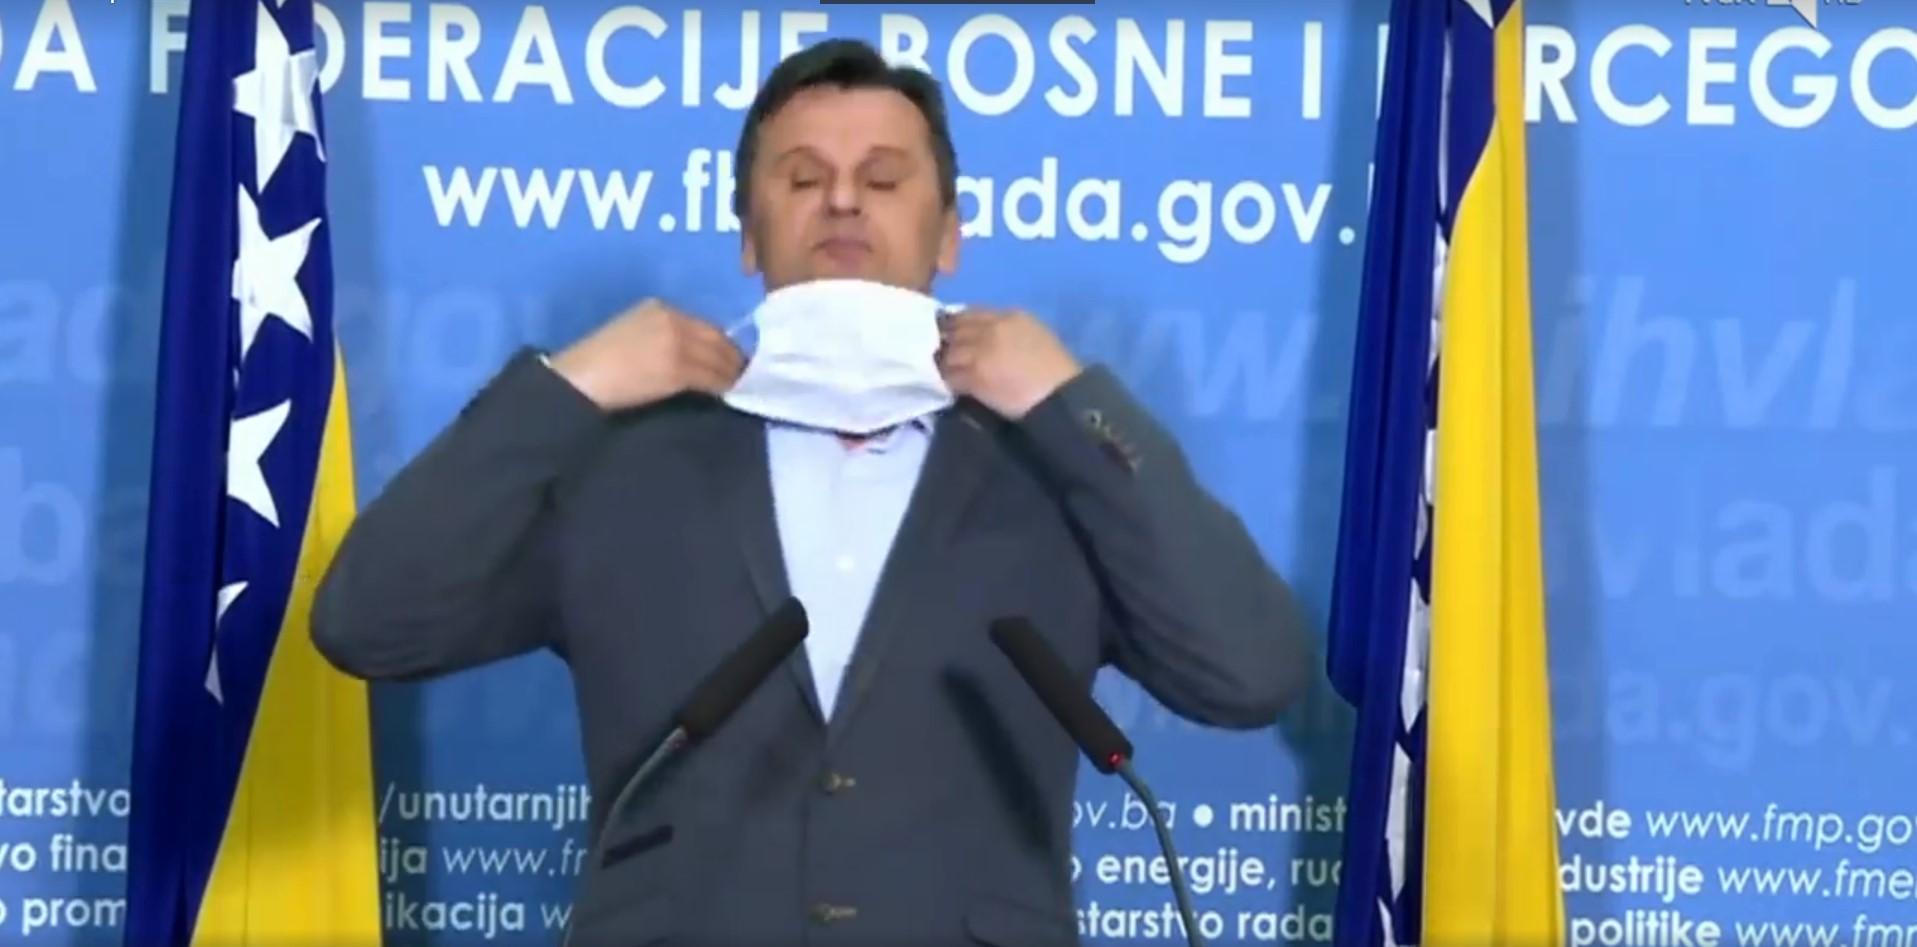 Novalić zvani "Maska": Nabavljao respiratore, a nije znao ni masku staviti - Avaz